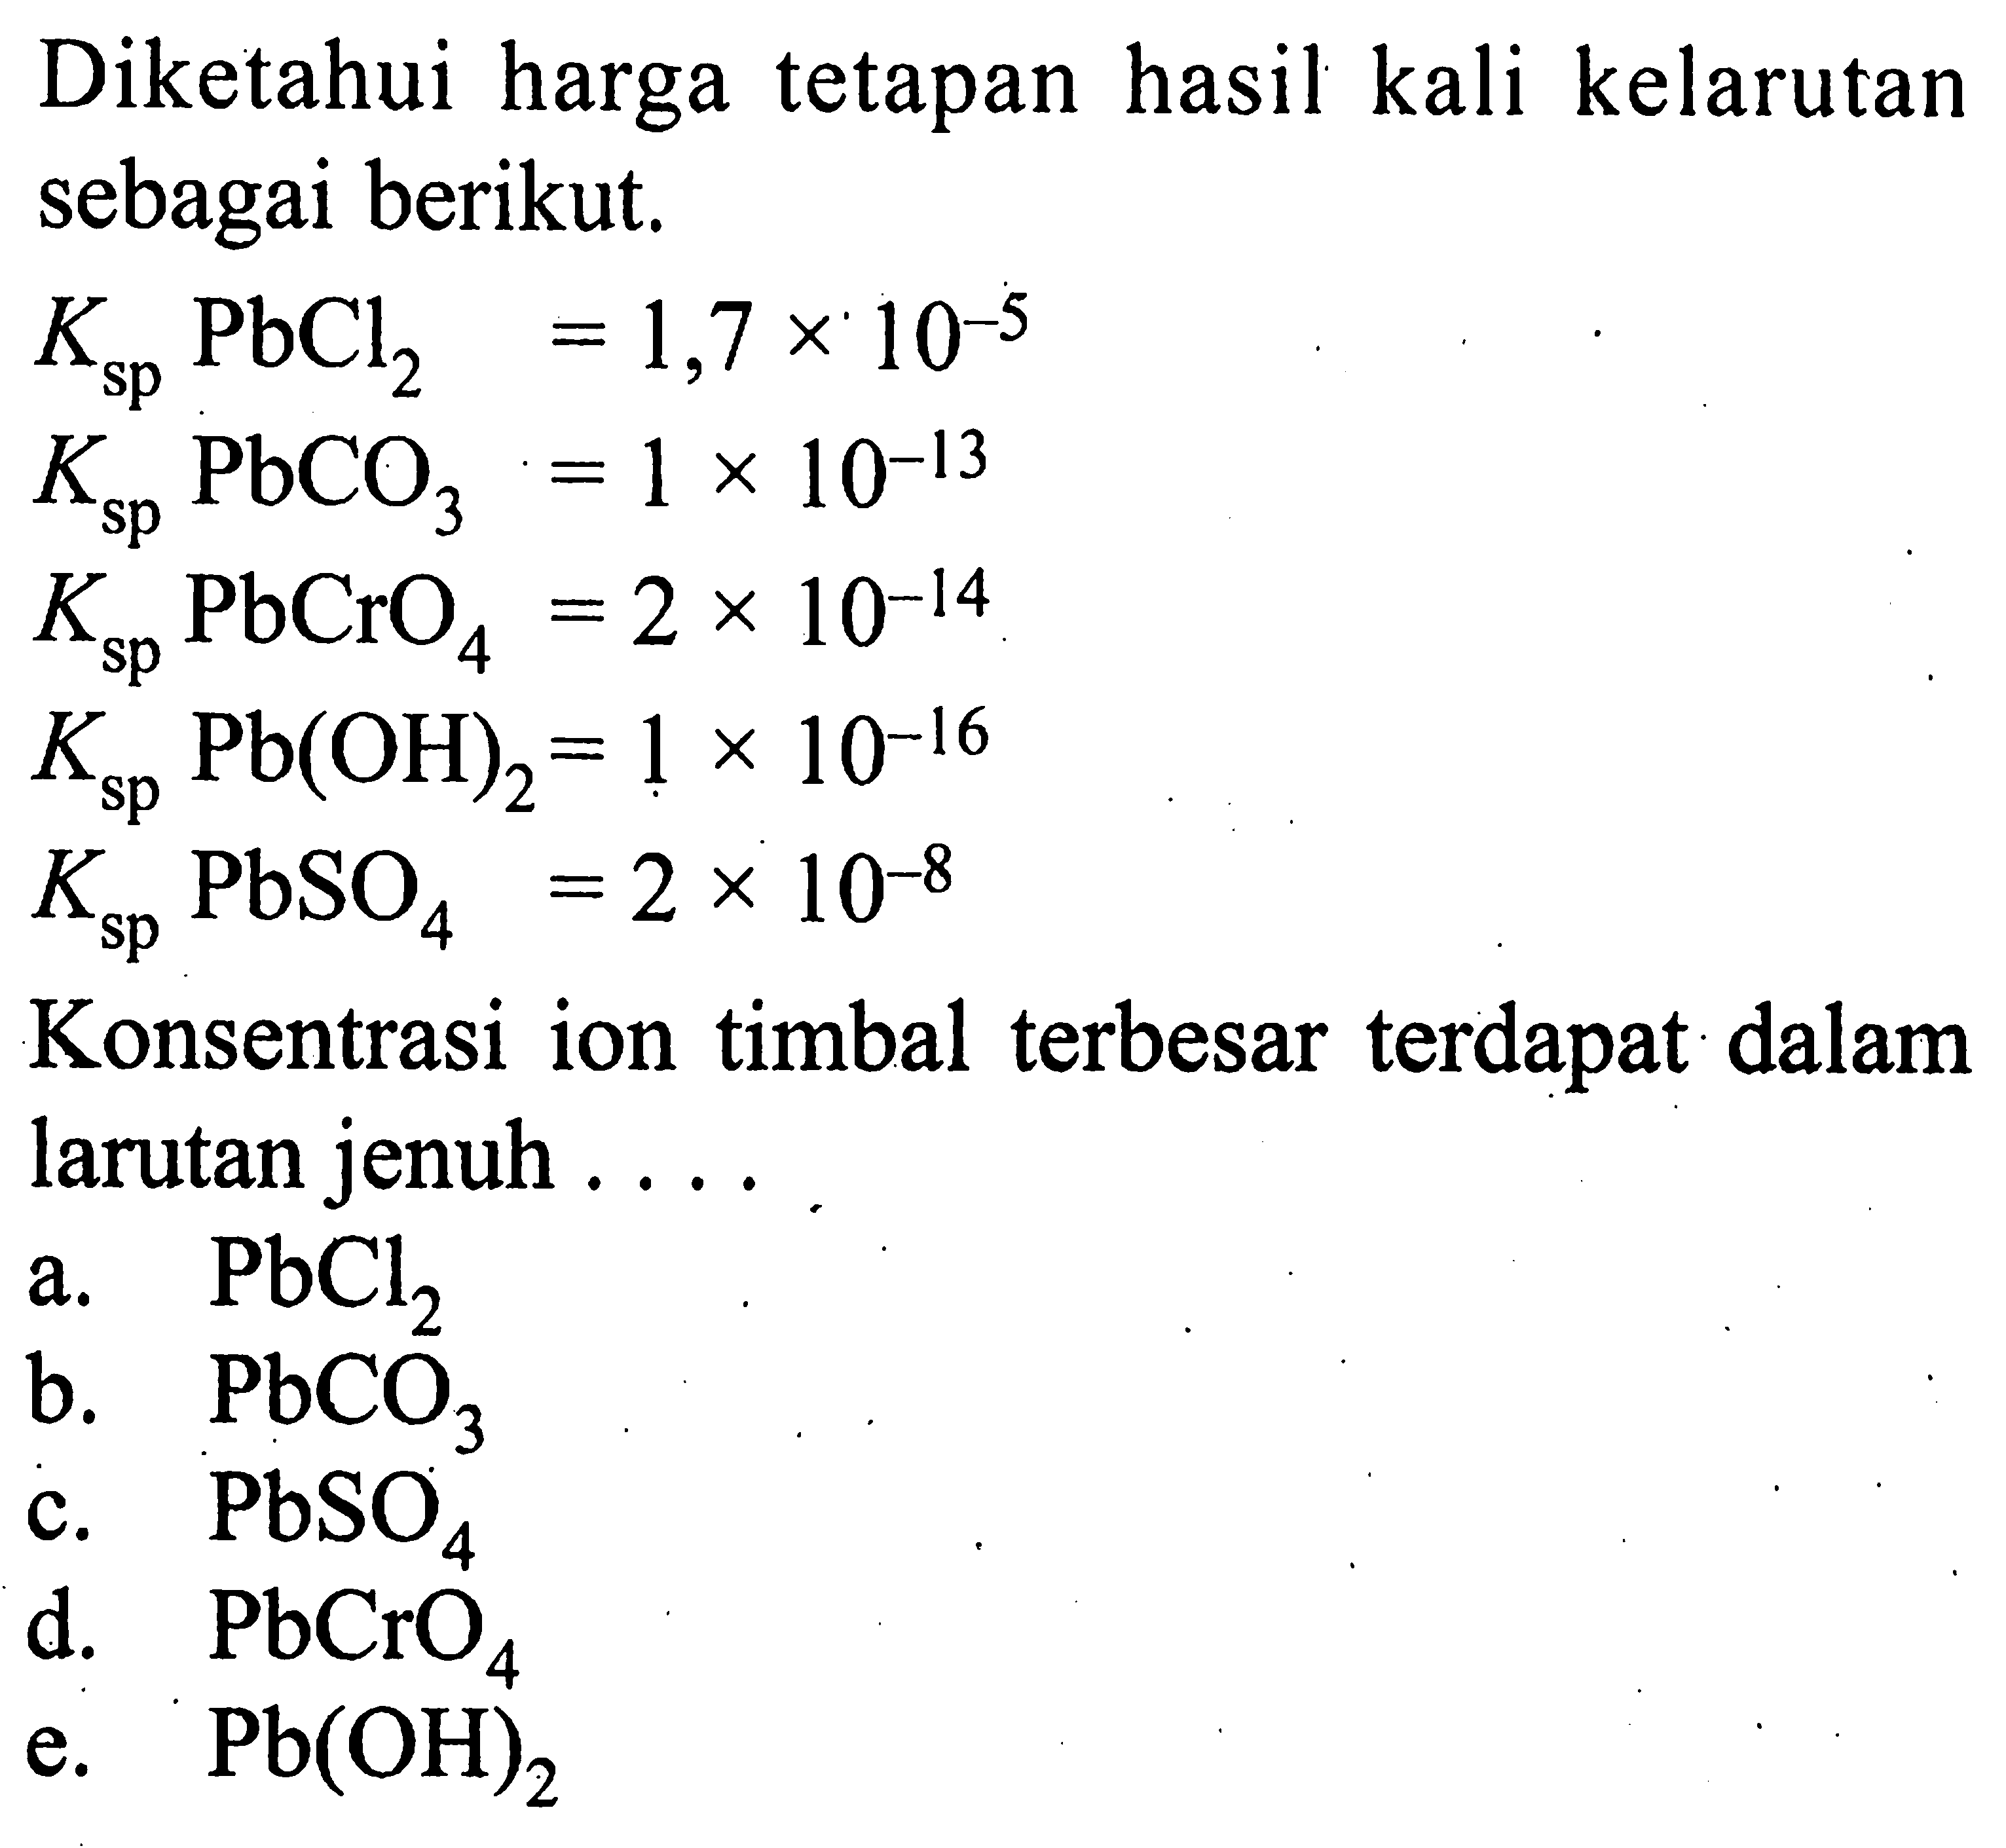 Diketahui harga tetapan hasil kali kelarutan sebagai berikut.Ksp PbCl2=1,7 x 10^-5 Ksp PbCO3=1 x 10^-13 Ksp PbCrO4=2 x 10^-14 Ksp Pb(OH)2=1 x 10^-16 Ksp PbSO4=2 x 10^-8Konsentrasi ion timbal terbesar terdapat dalam larutan jenuh....